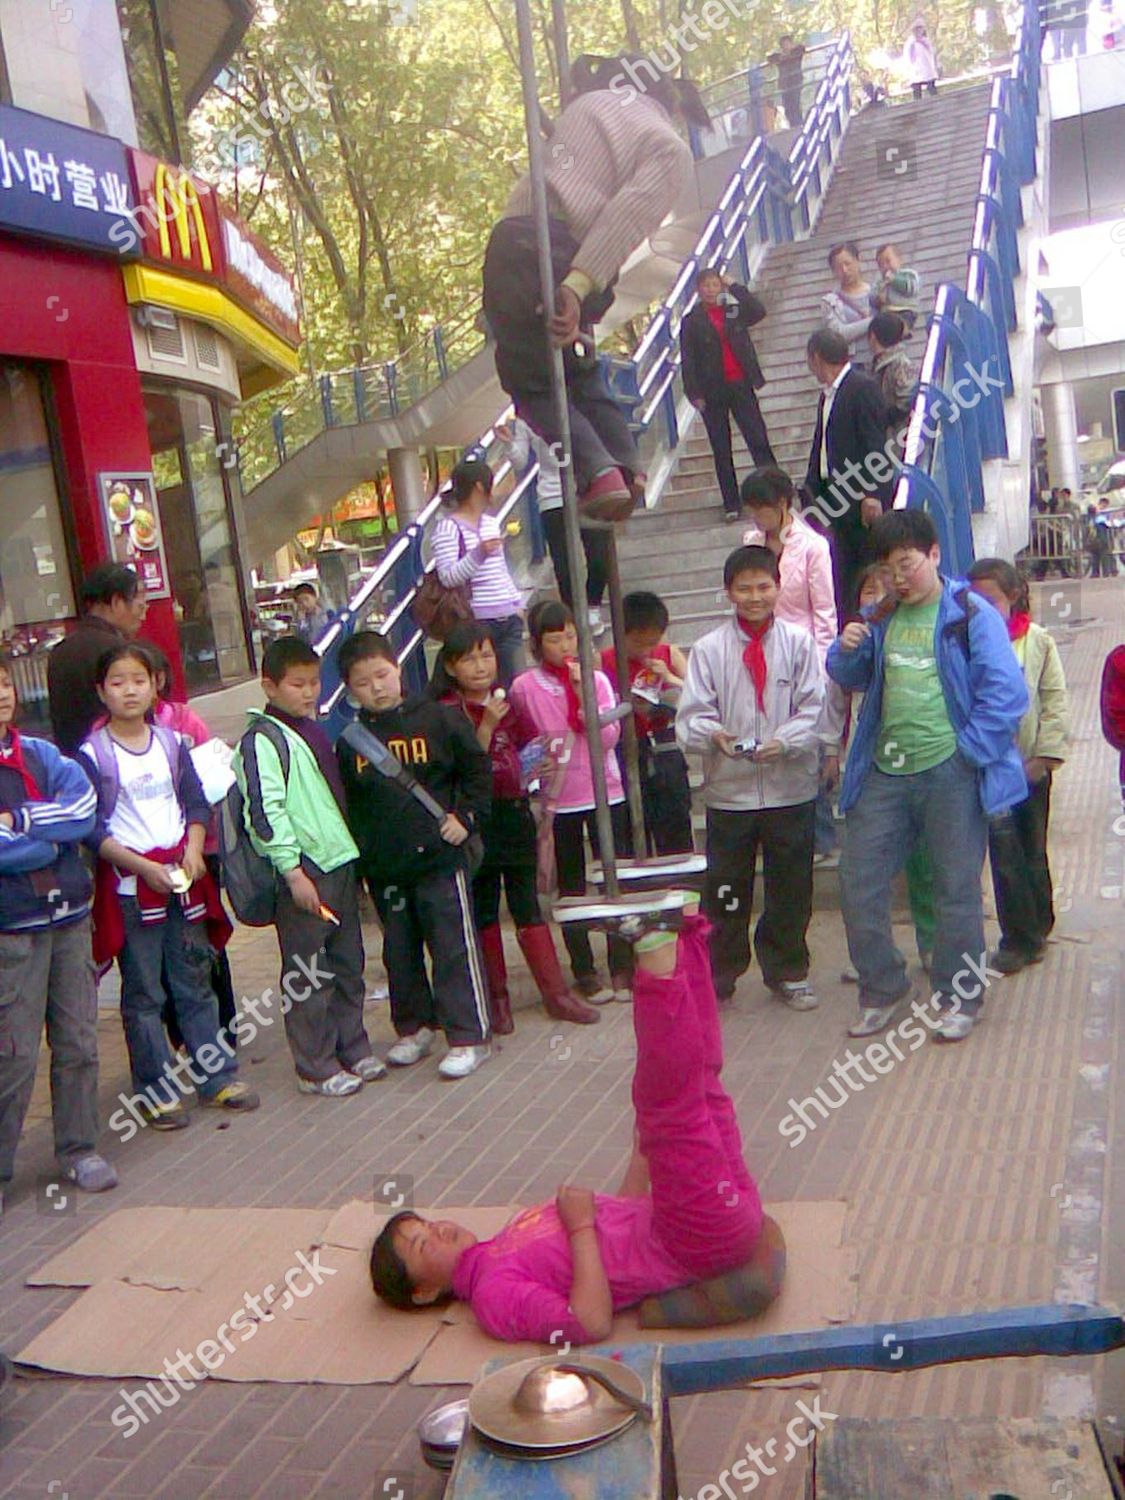 Kind girls in Zhengzhou